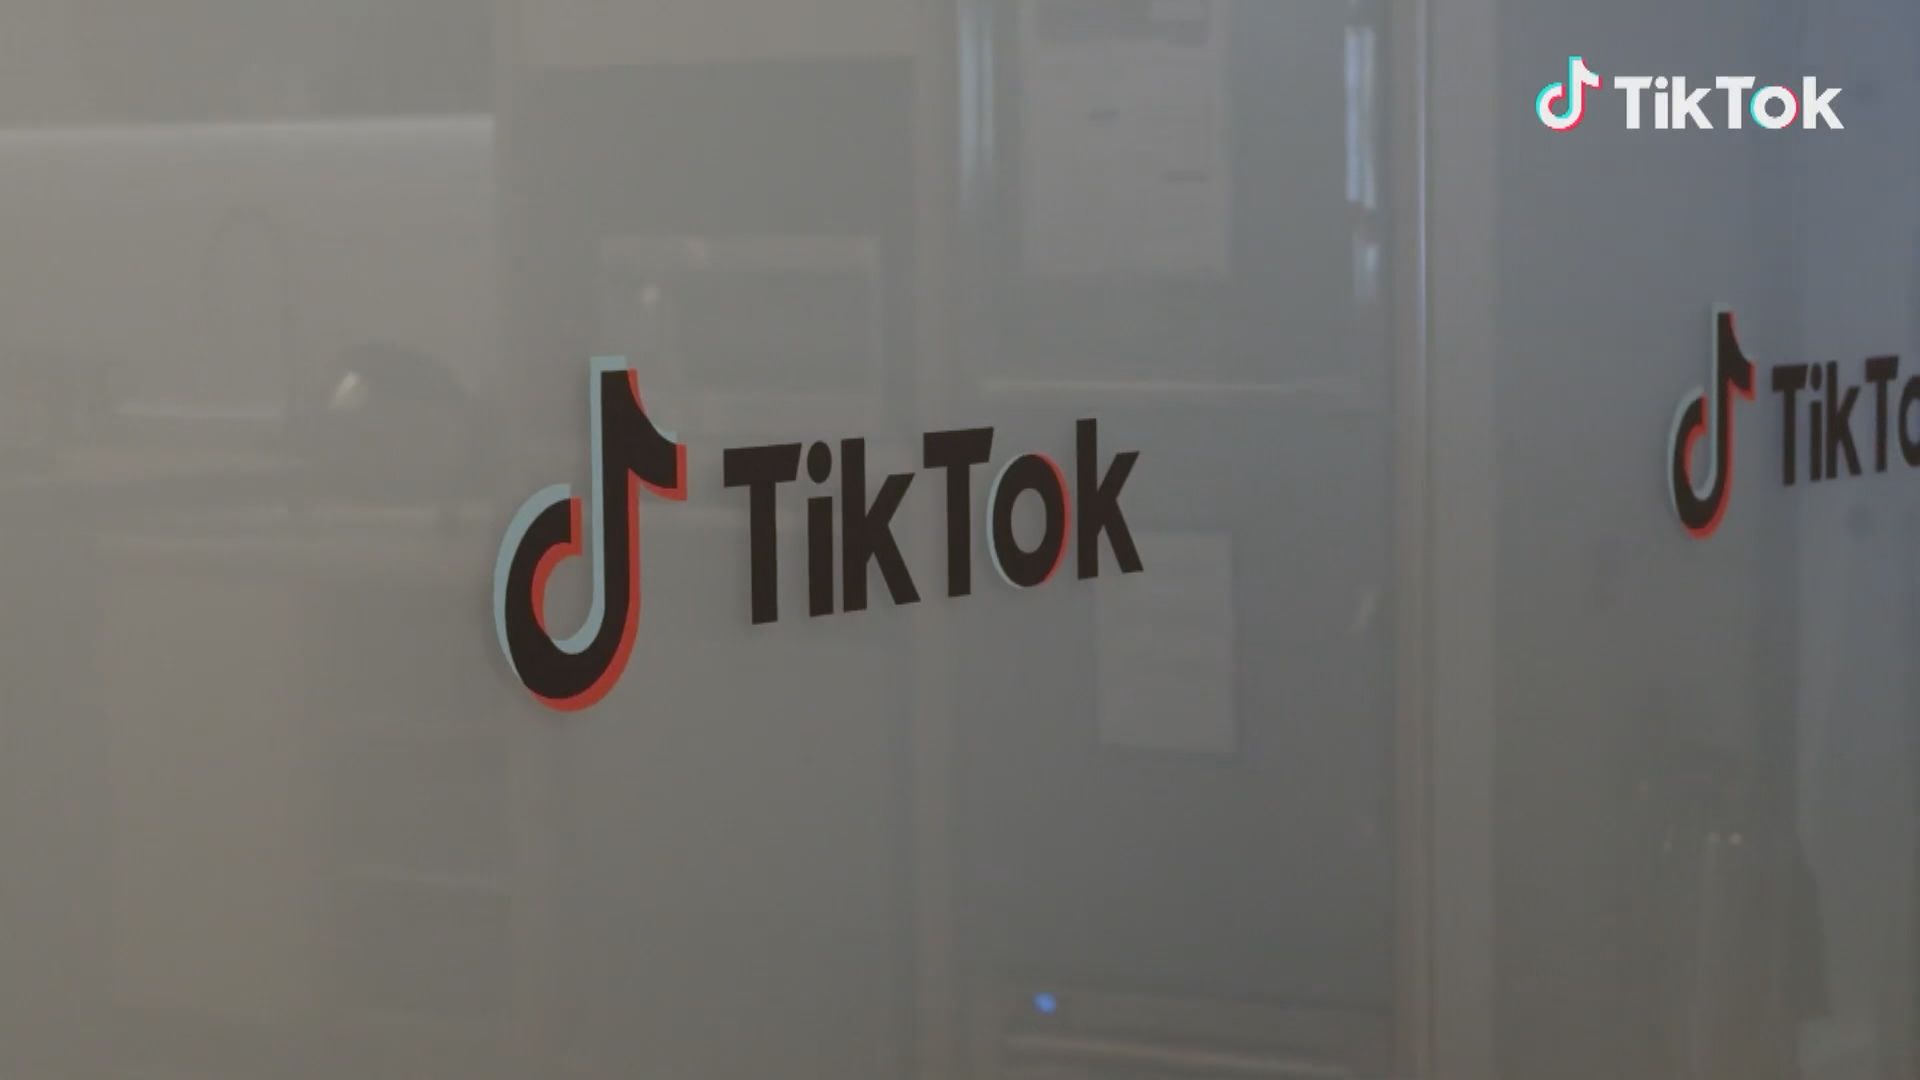 字節跳動據報有員工不當獲取TikTok美國用戶數據